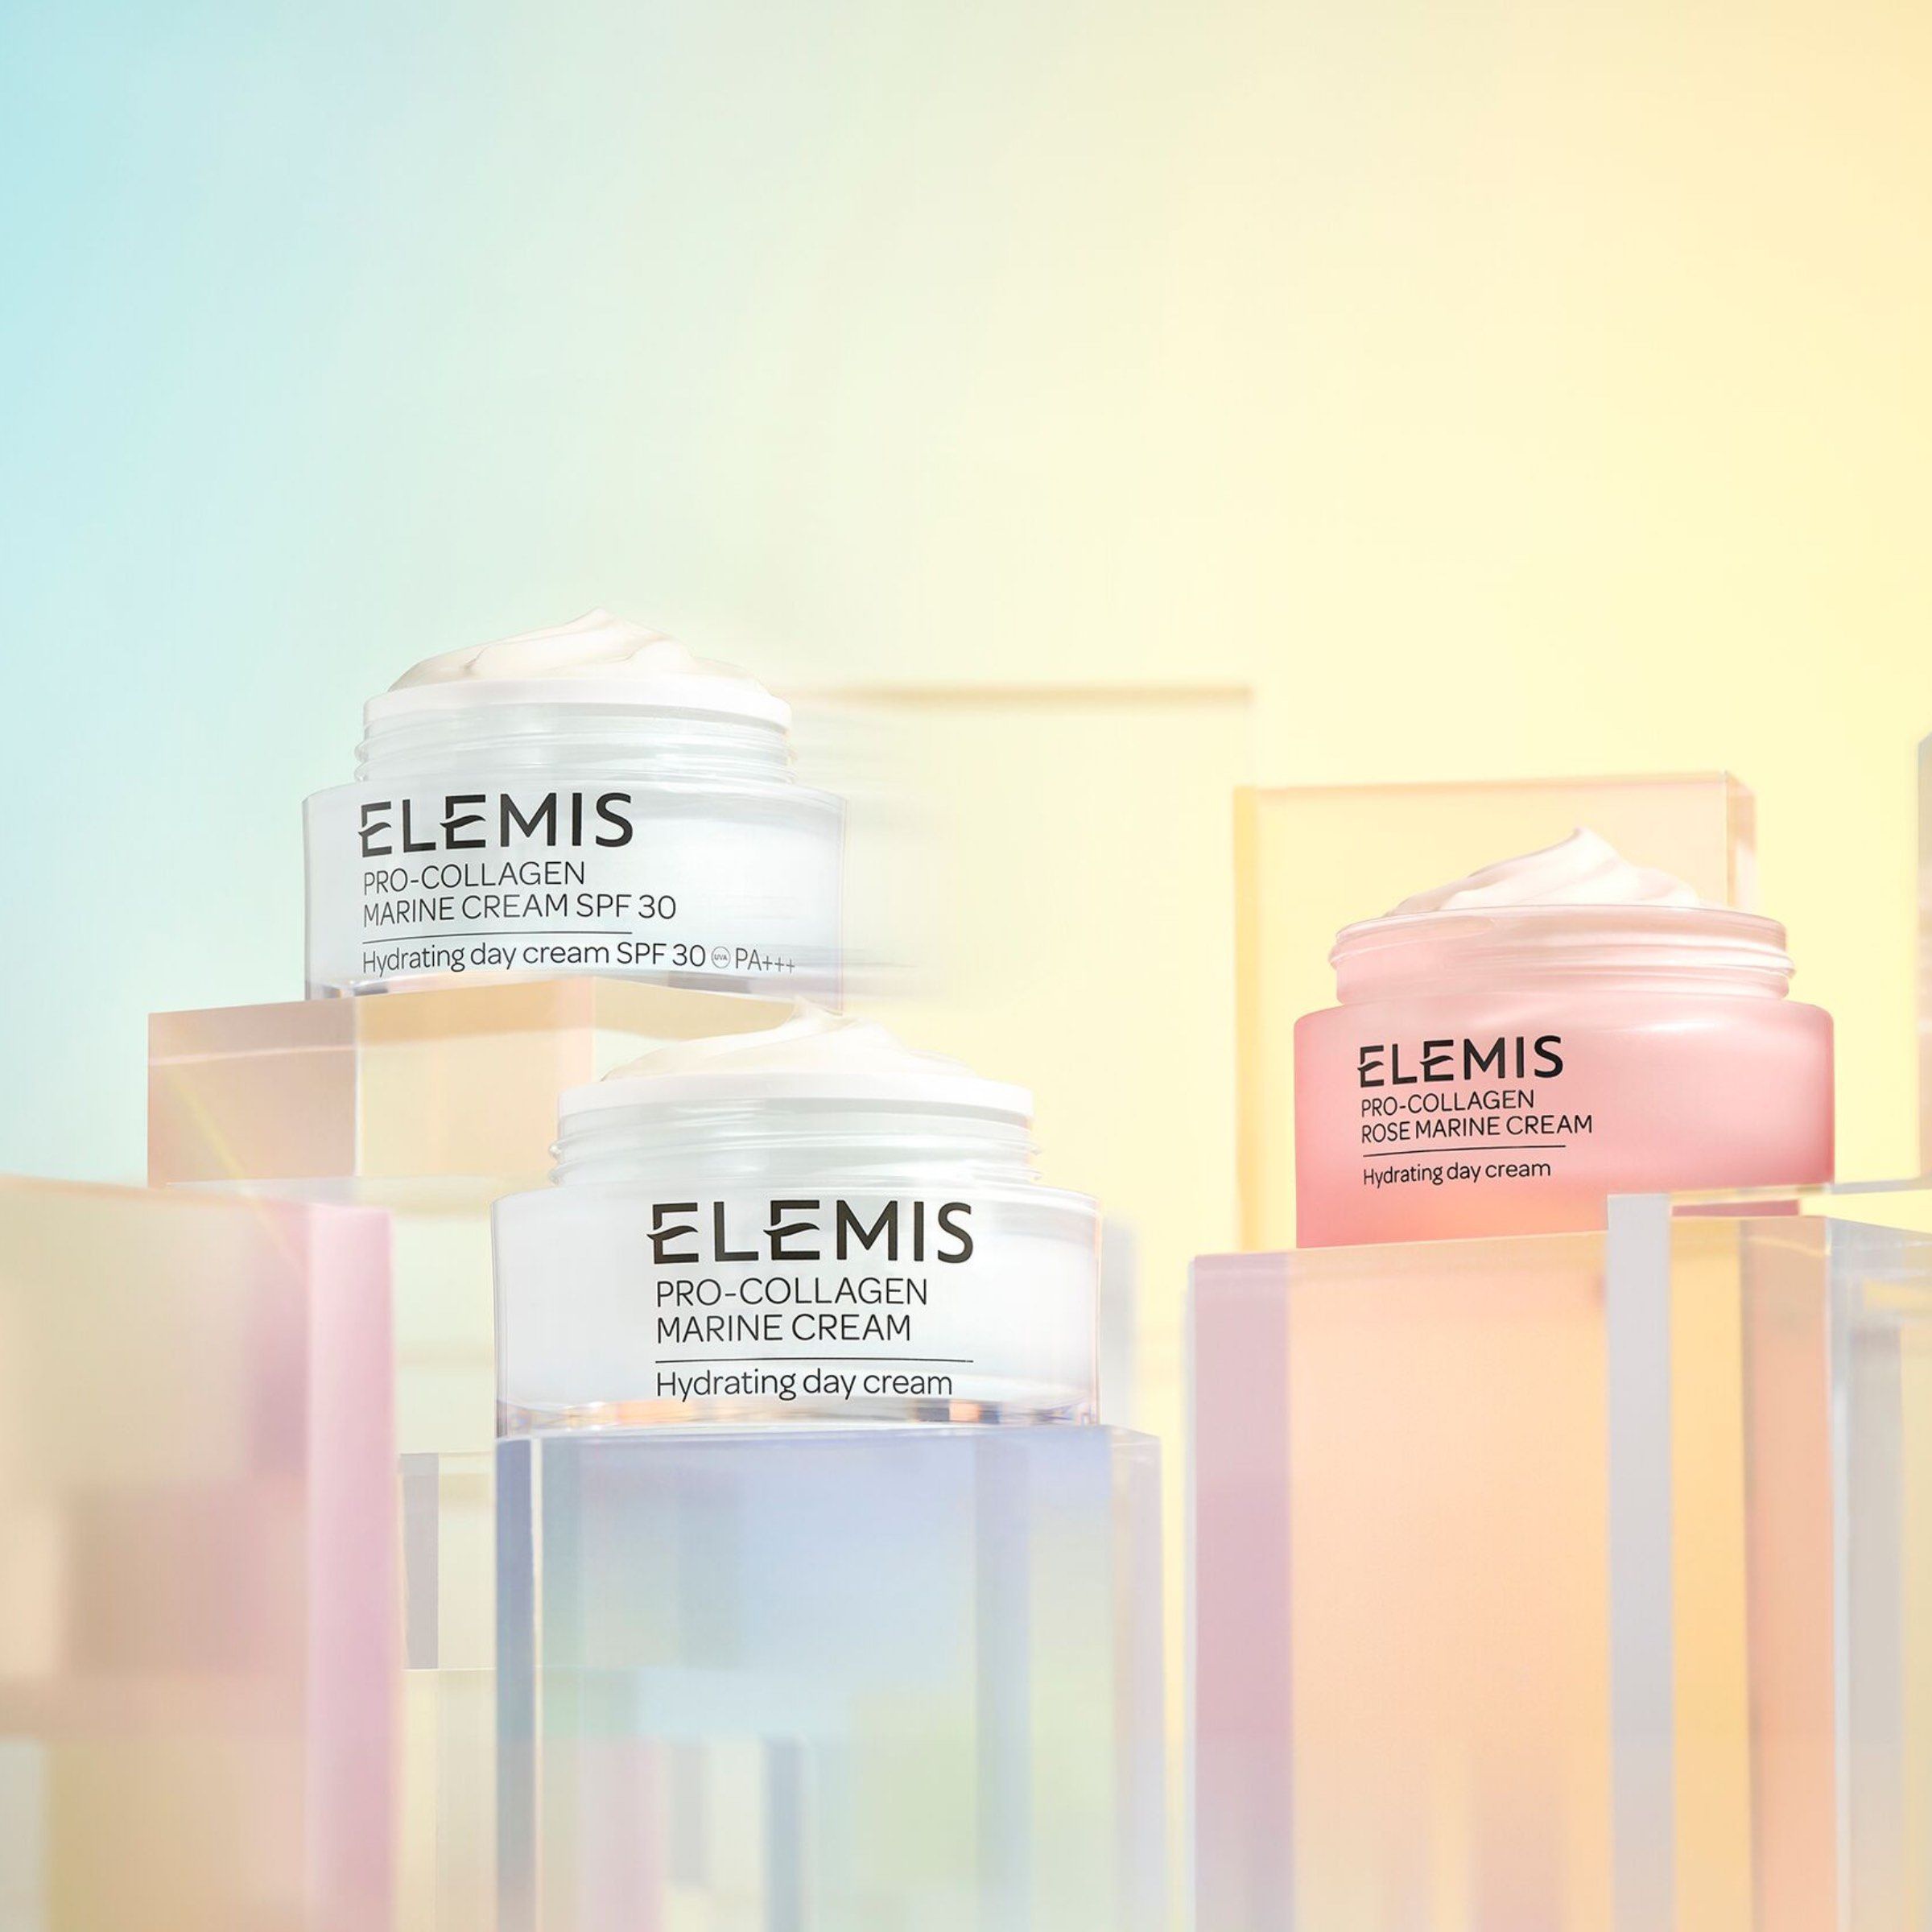 Elemis Pro-Collagen Marine Cream products